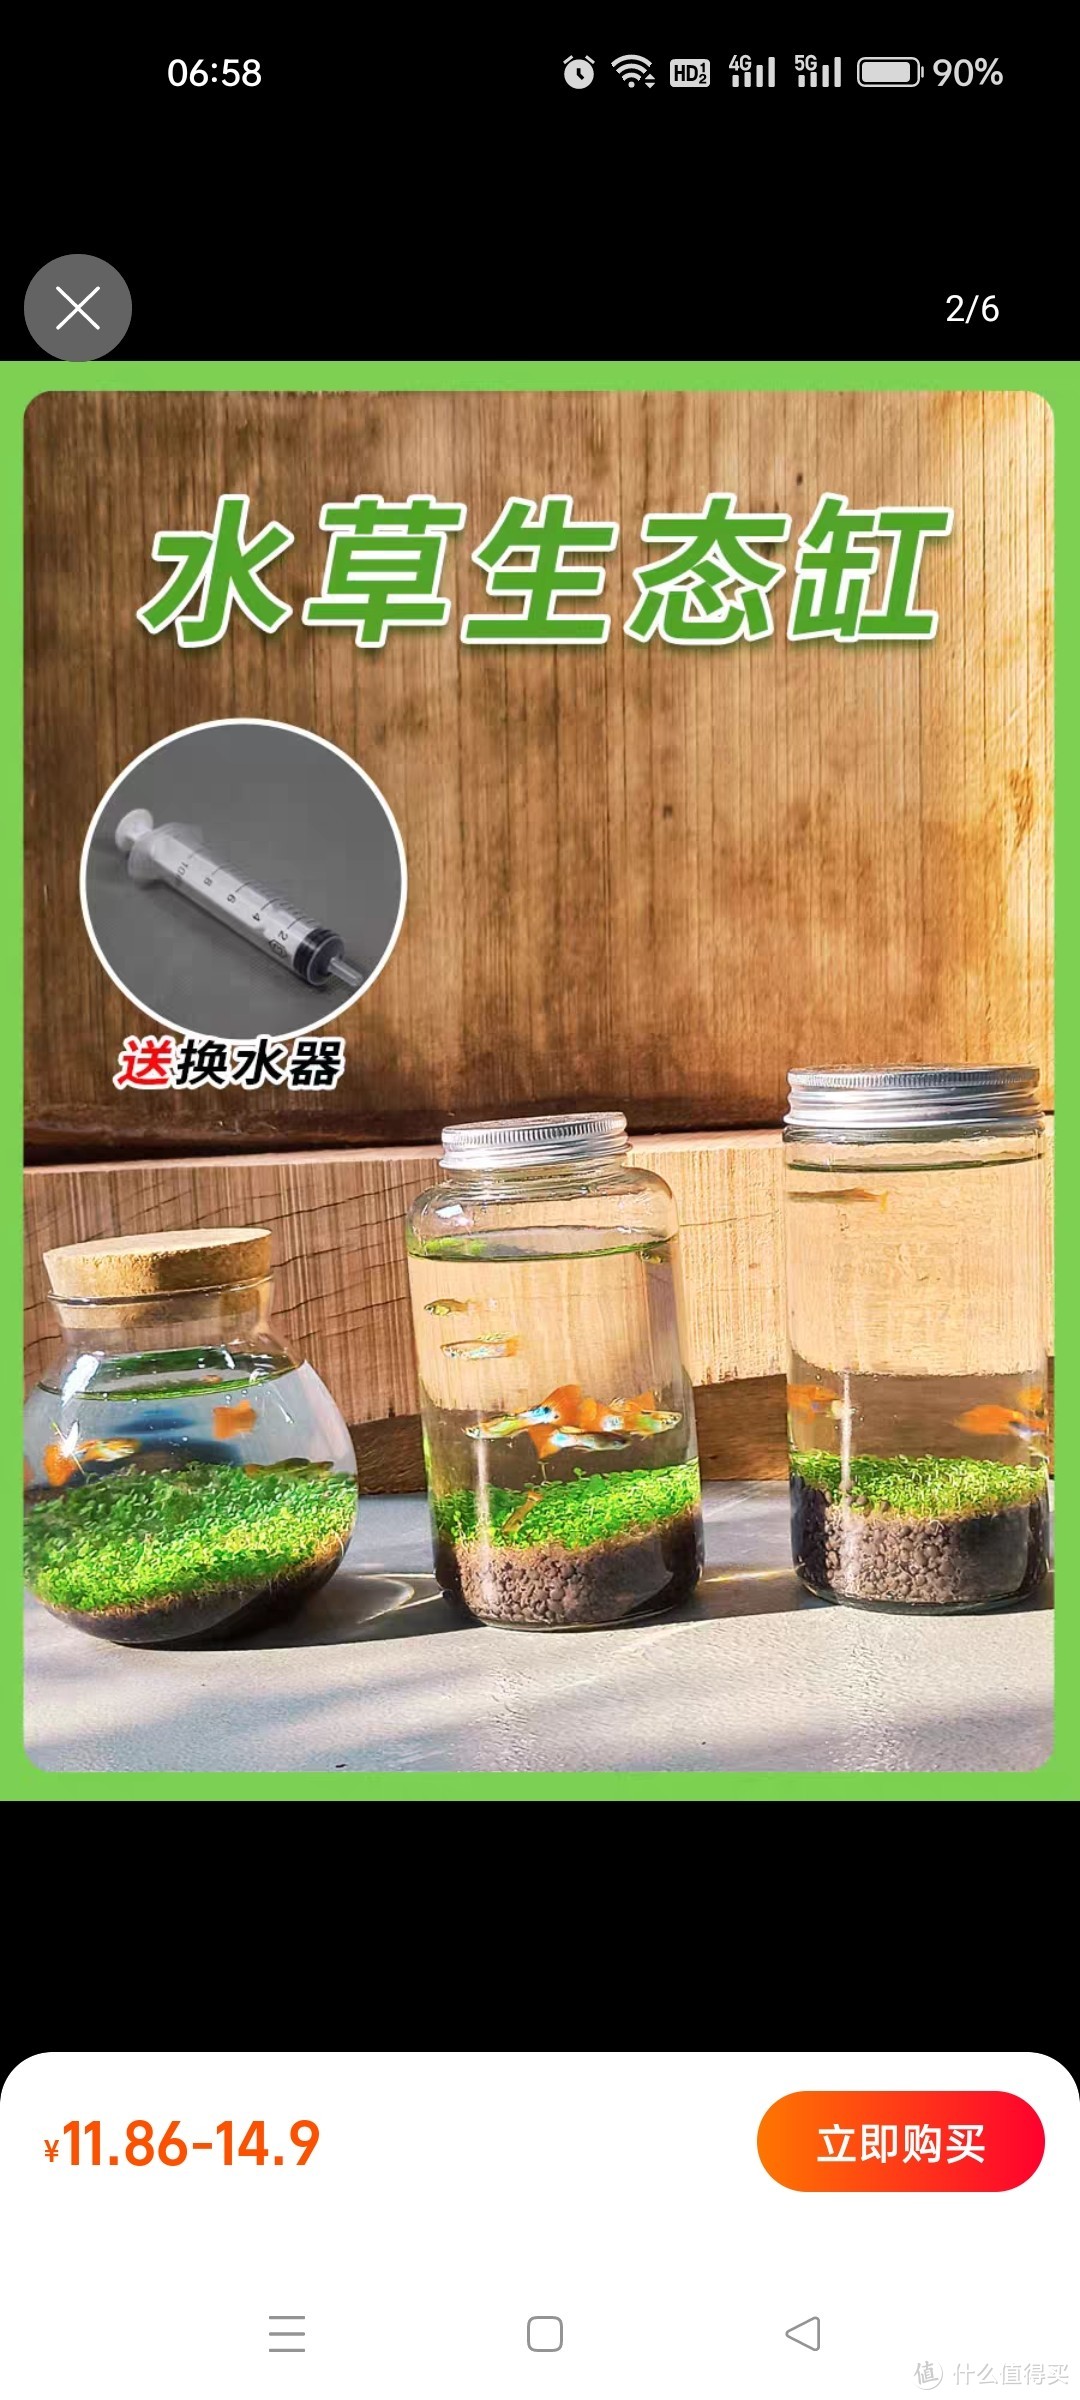 微景观生态瓶治愈创意迷你玻璃瓶鱼缸办公室绿植水草种子发芽记录